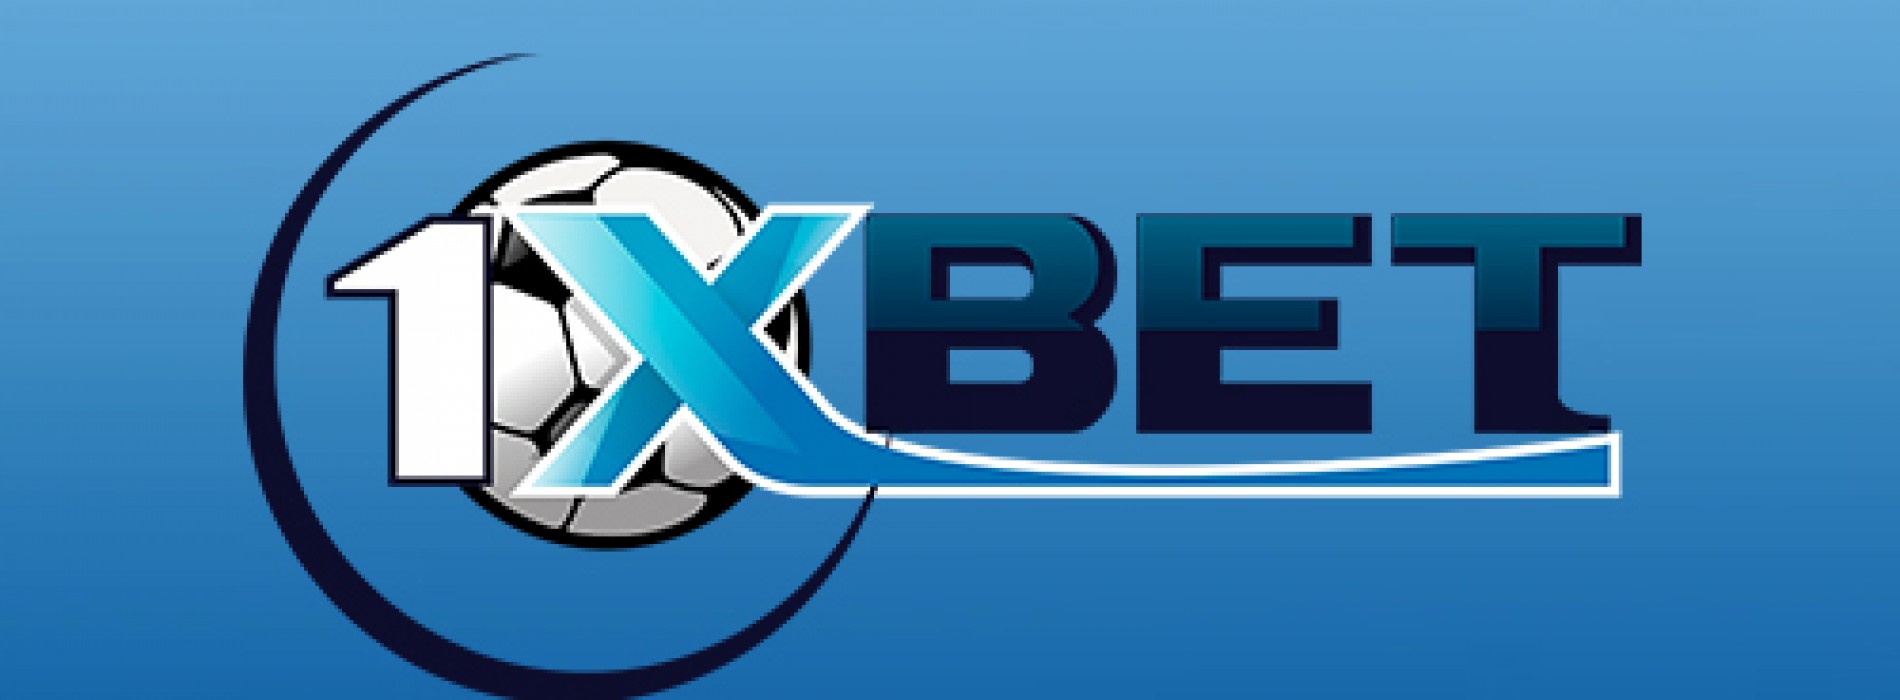 Букмекерская контора 1 xbet регистрация телефон поддержки betcity